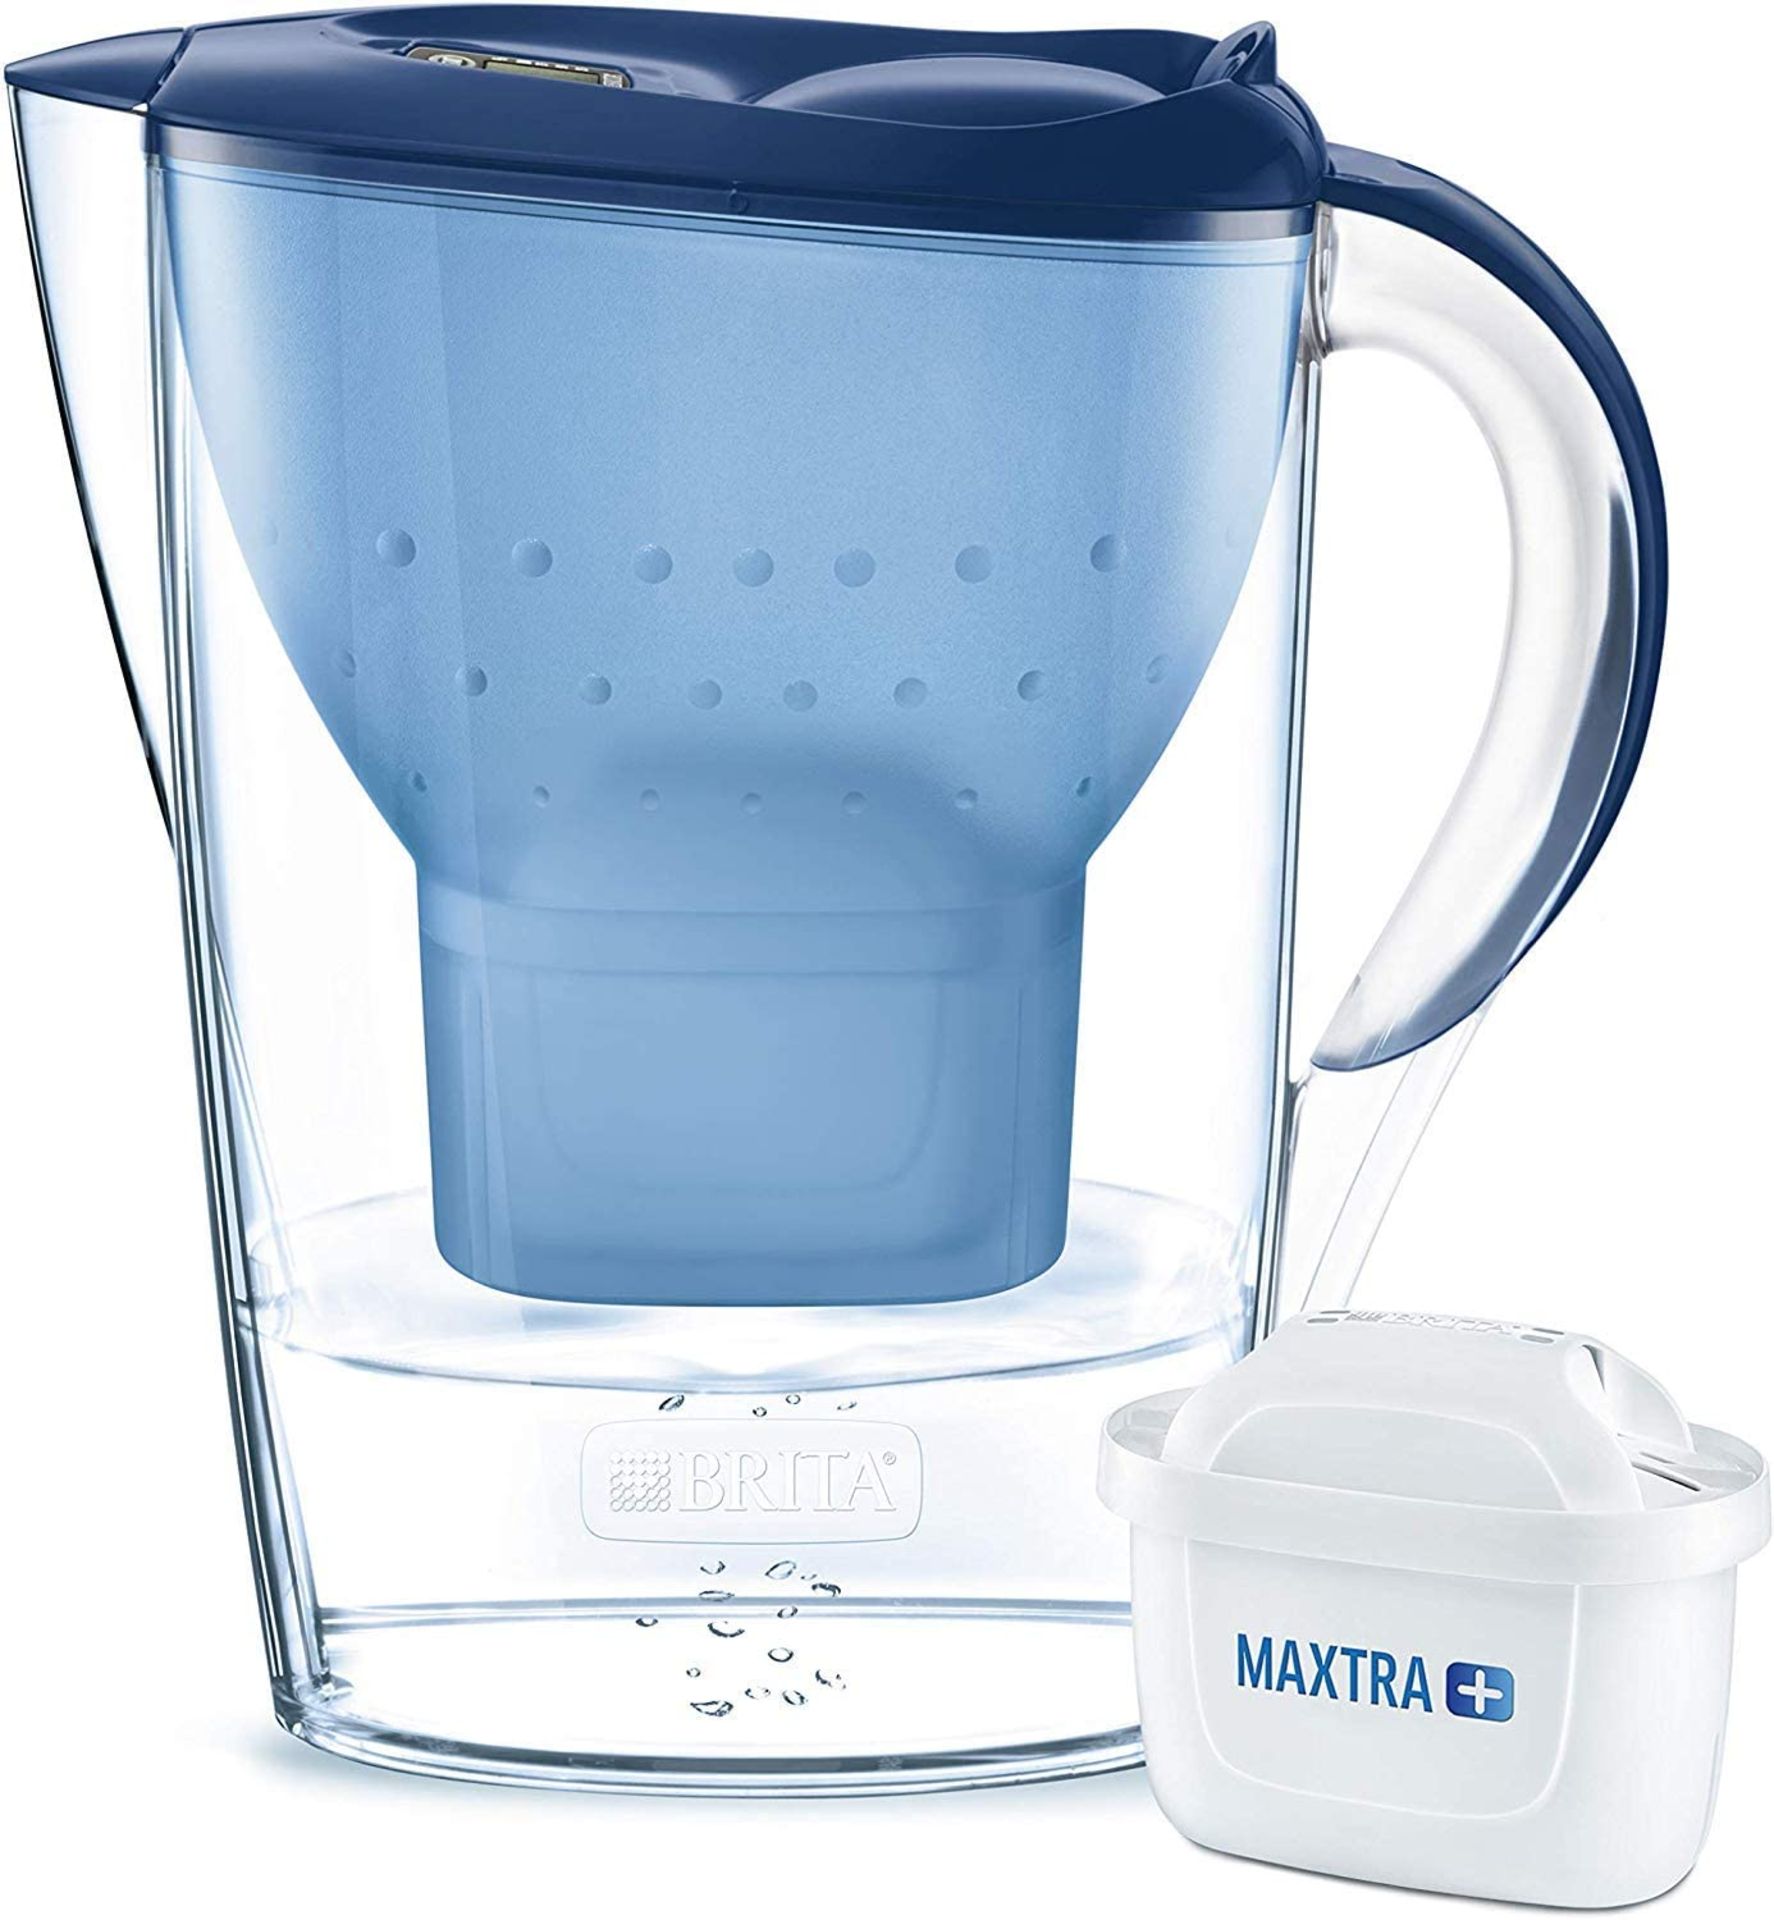 RRP - £16.00 BRITA Marella fridge water filter jug for reduction of chlorine